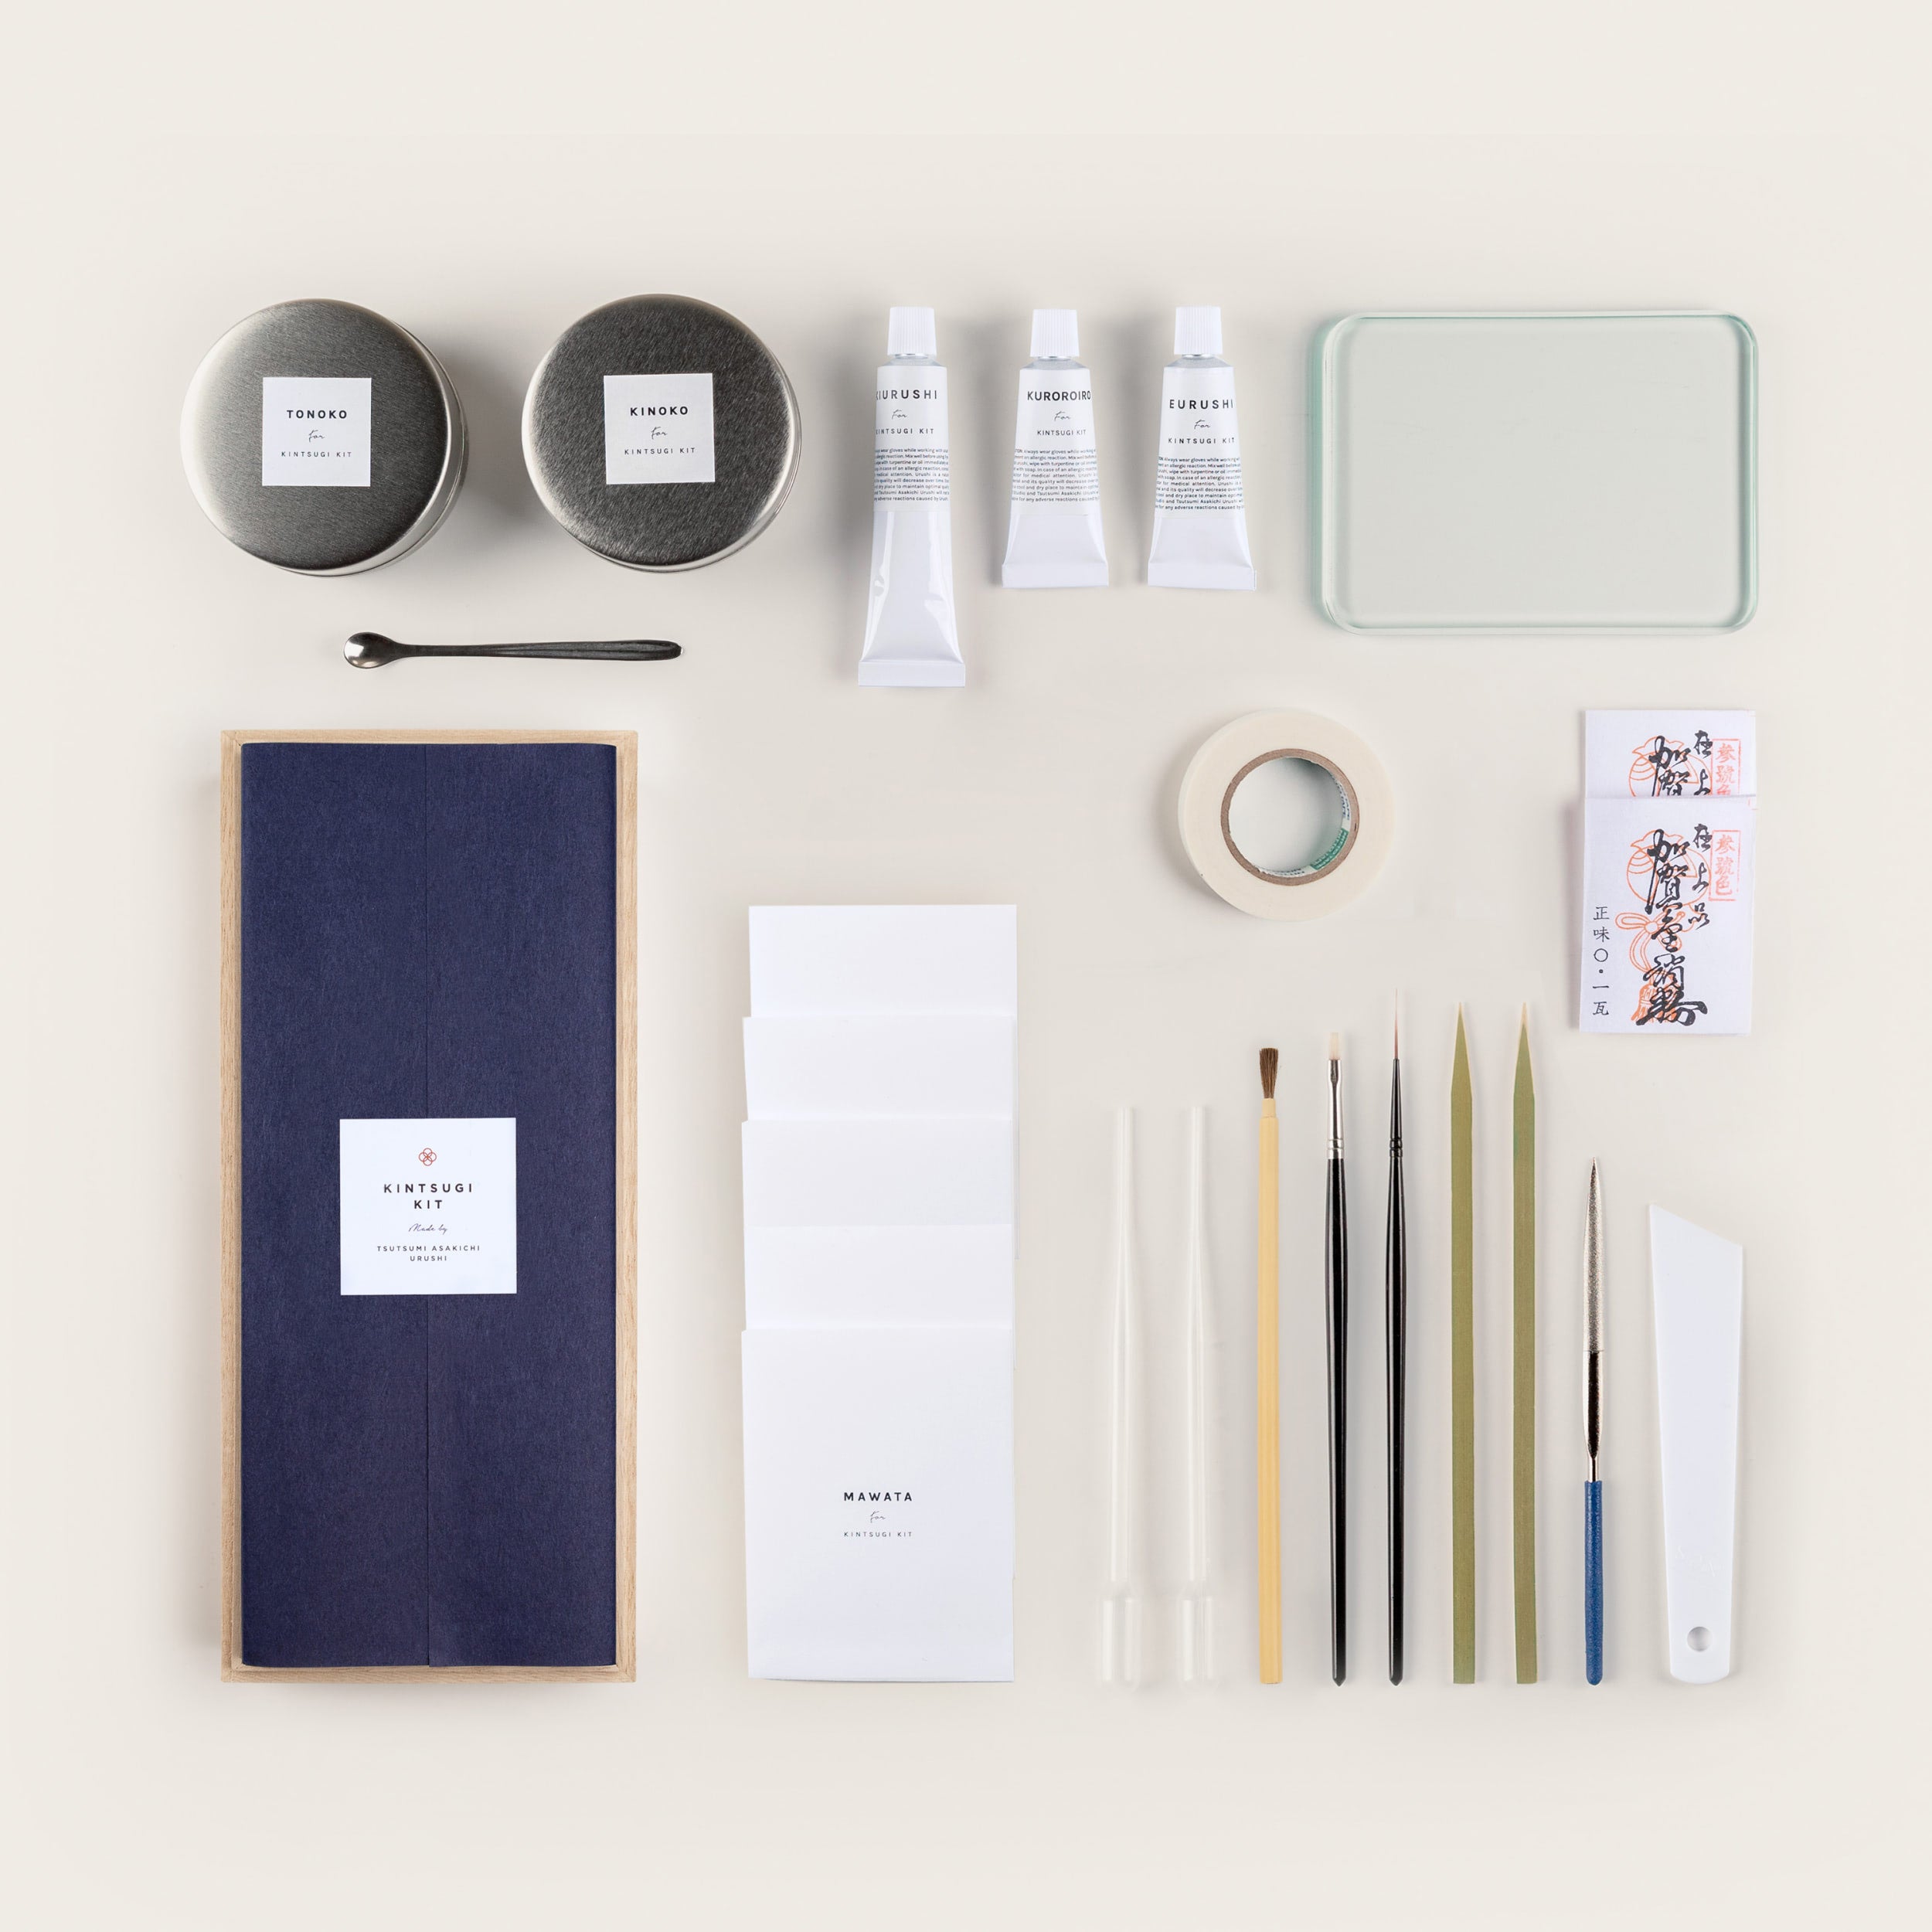 What's in the Kintsugi Kits? – POJ Studio